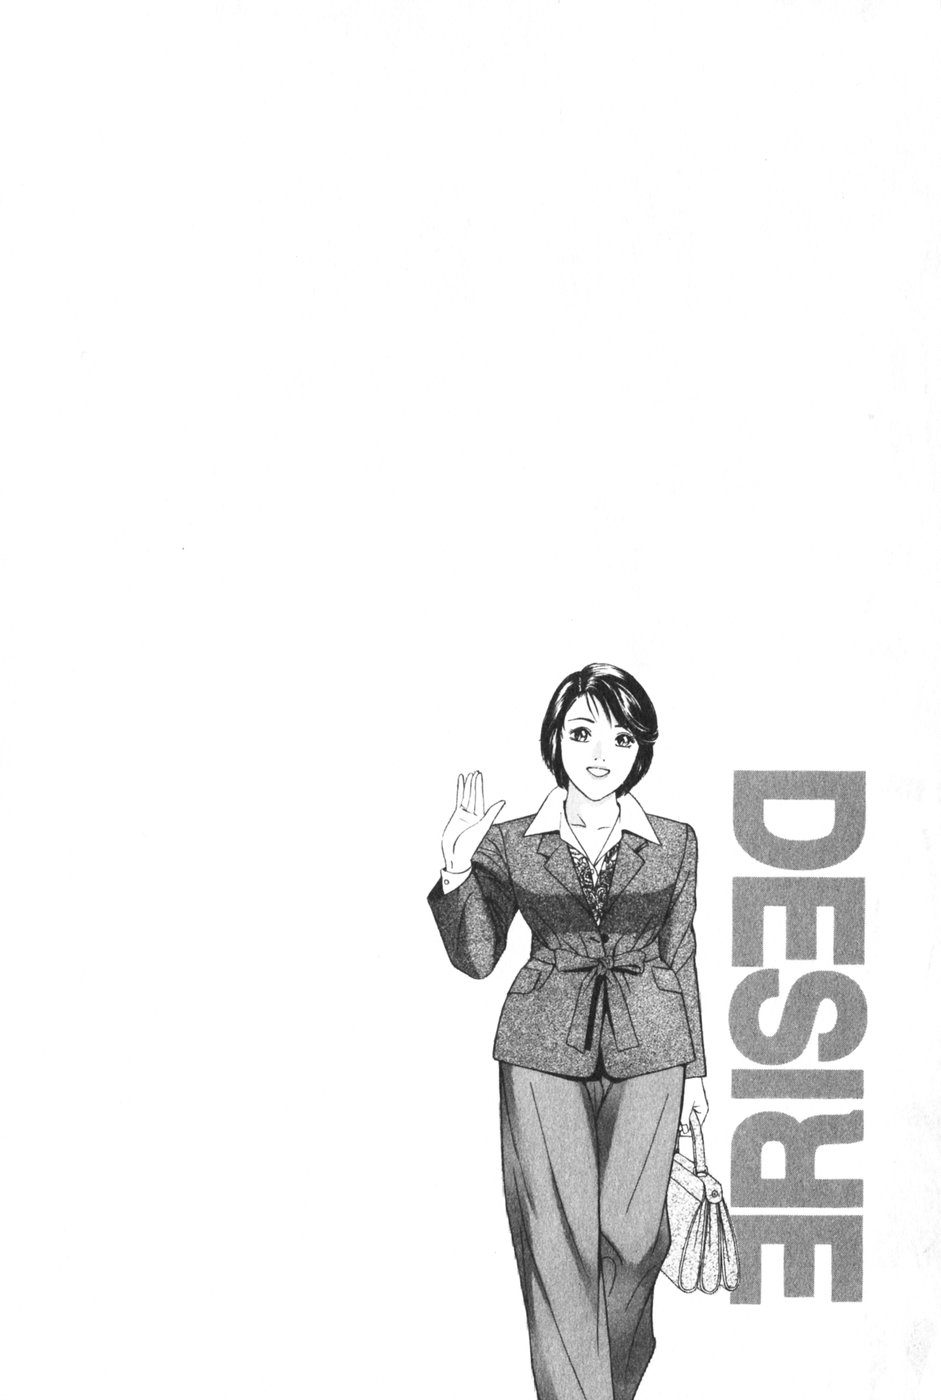 [Kenichi Kotani] desire v12 